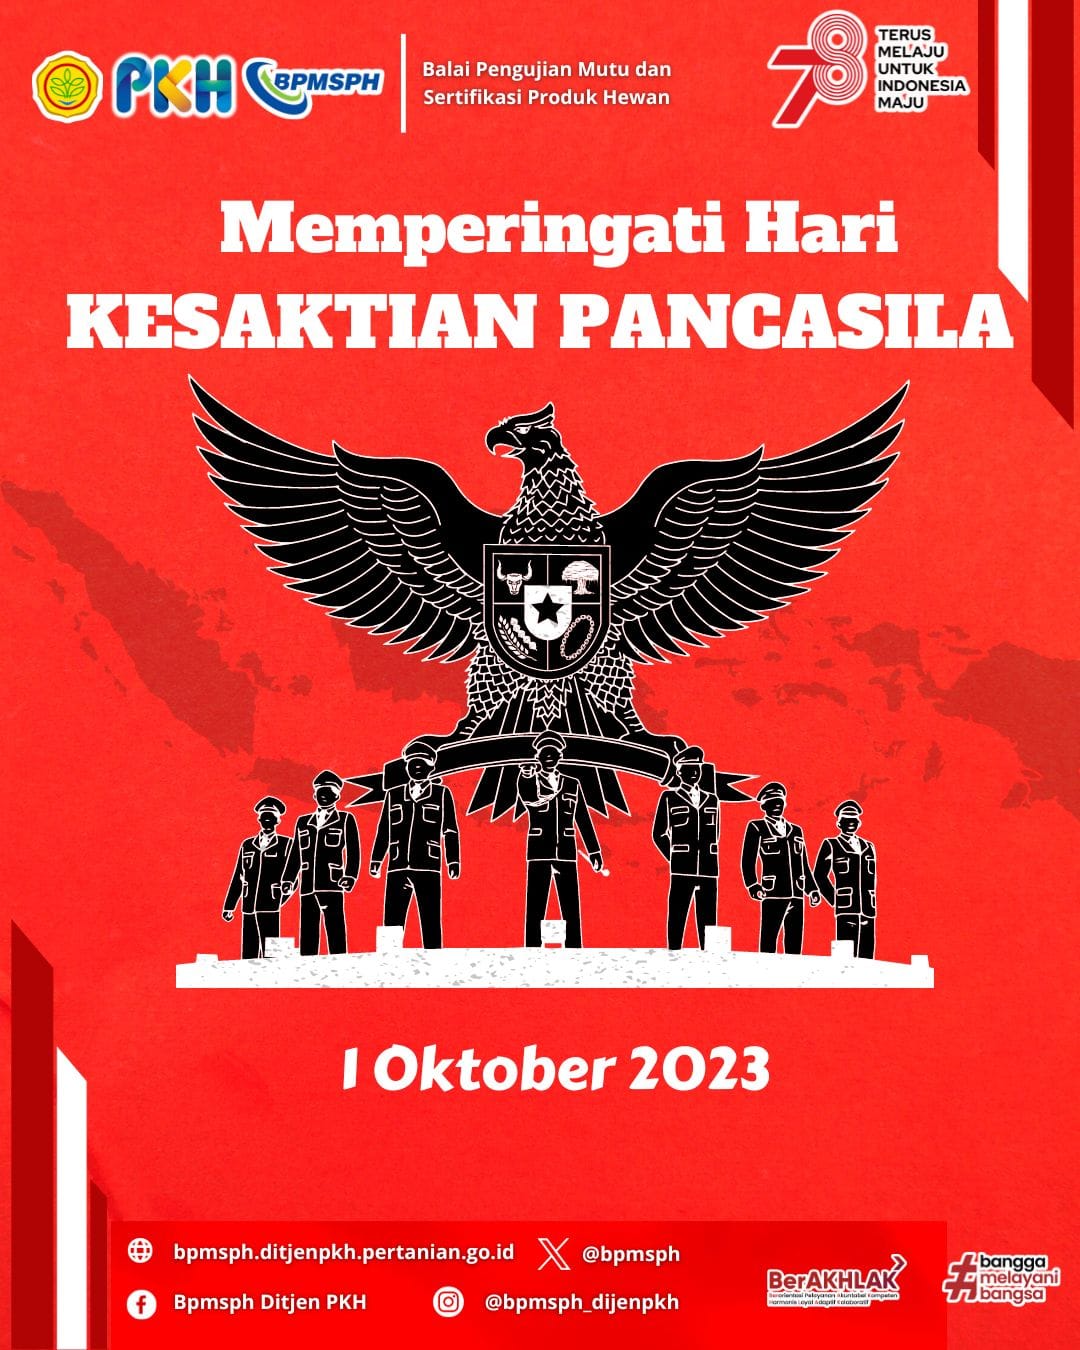 Hari Kesaktian Pancasila 1 Oktober 2023